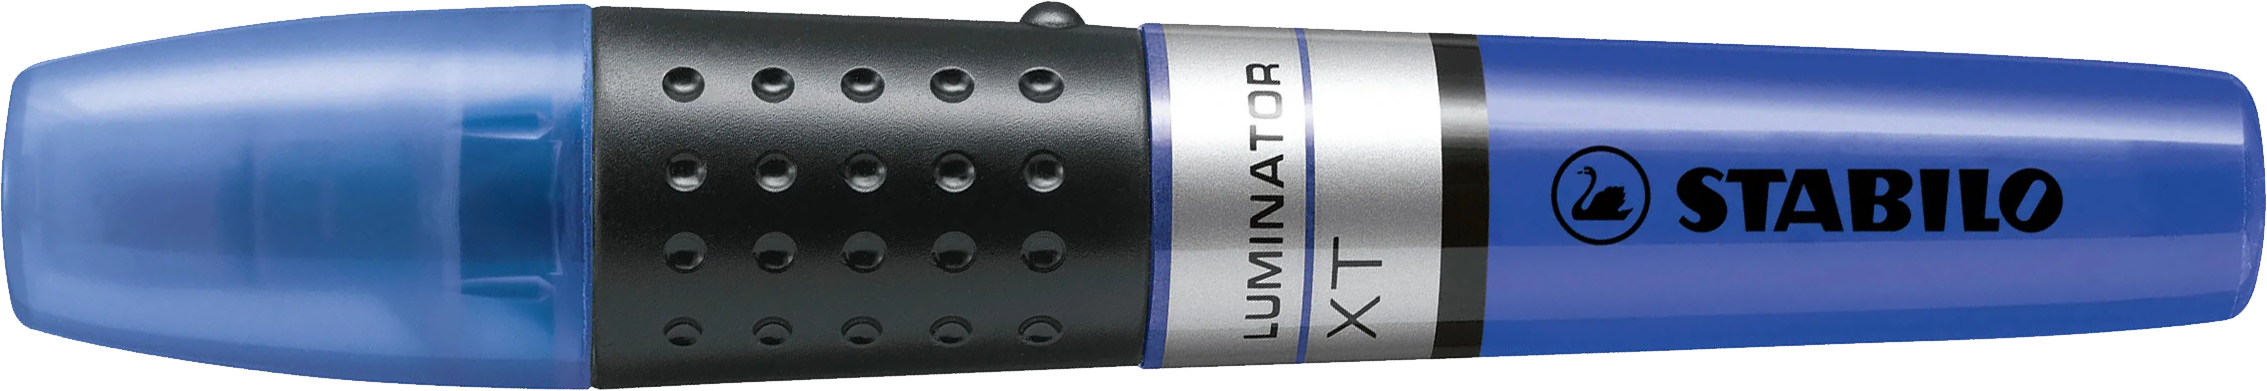 STABILO Textmarker LUMINATOR 2-5mm 71/41 bleu bleu